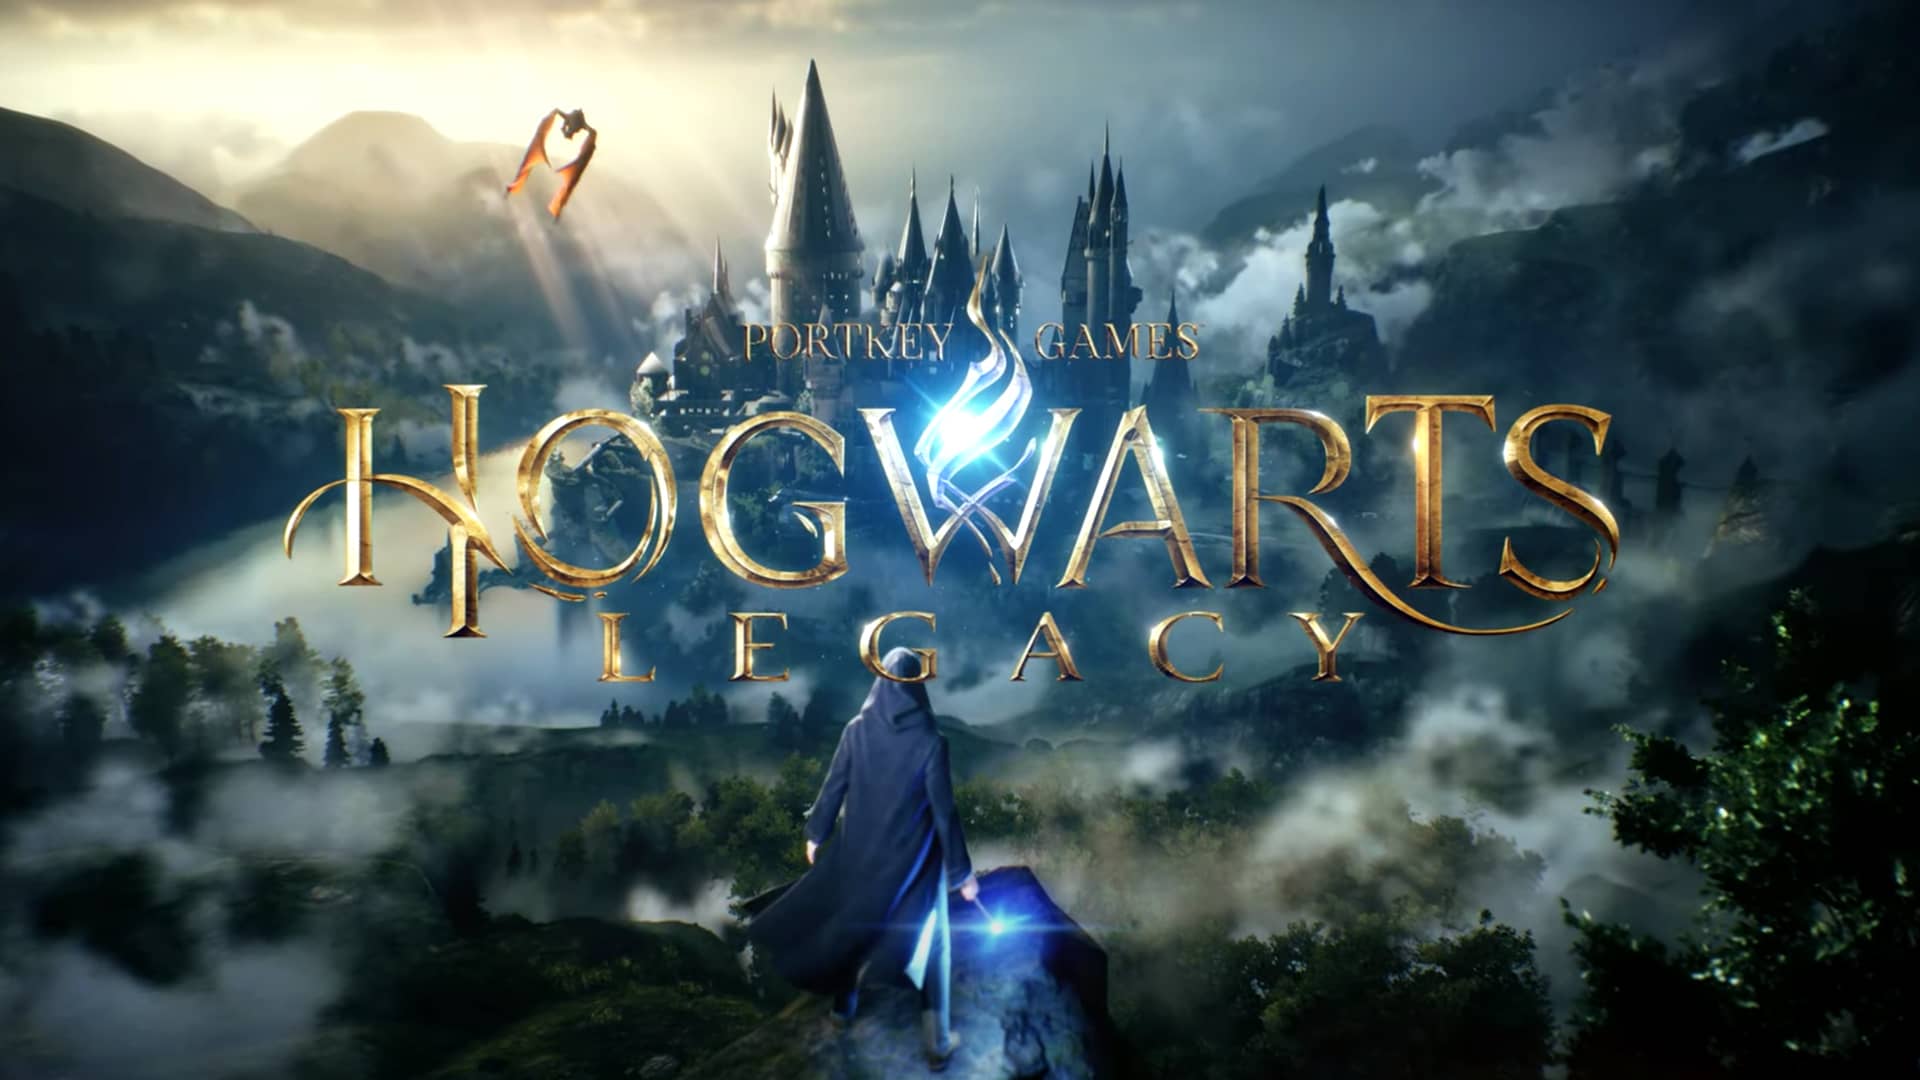 Инсайдер AccNgt сообщил в твиттере, что Hogwarts Legacy (Хогвартс Наследие) выйдет в июле-сентябре 2022 года.